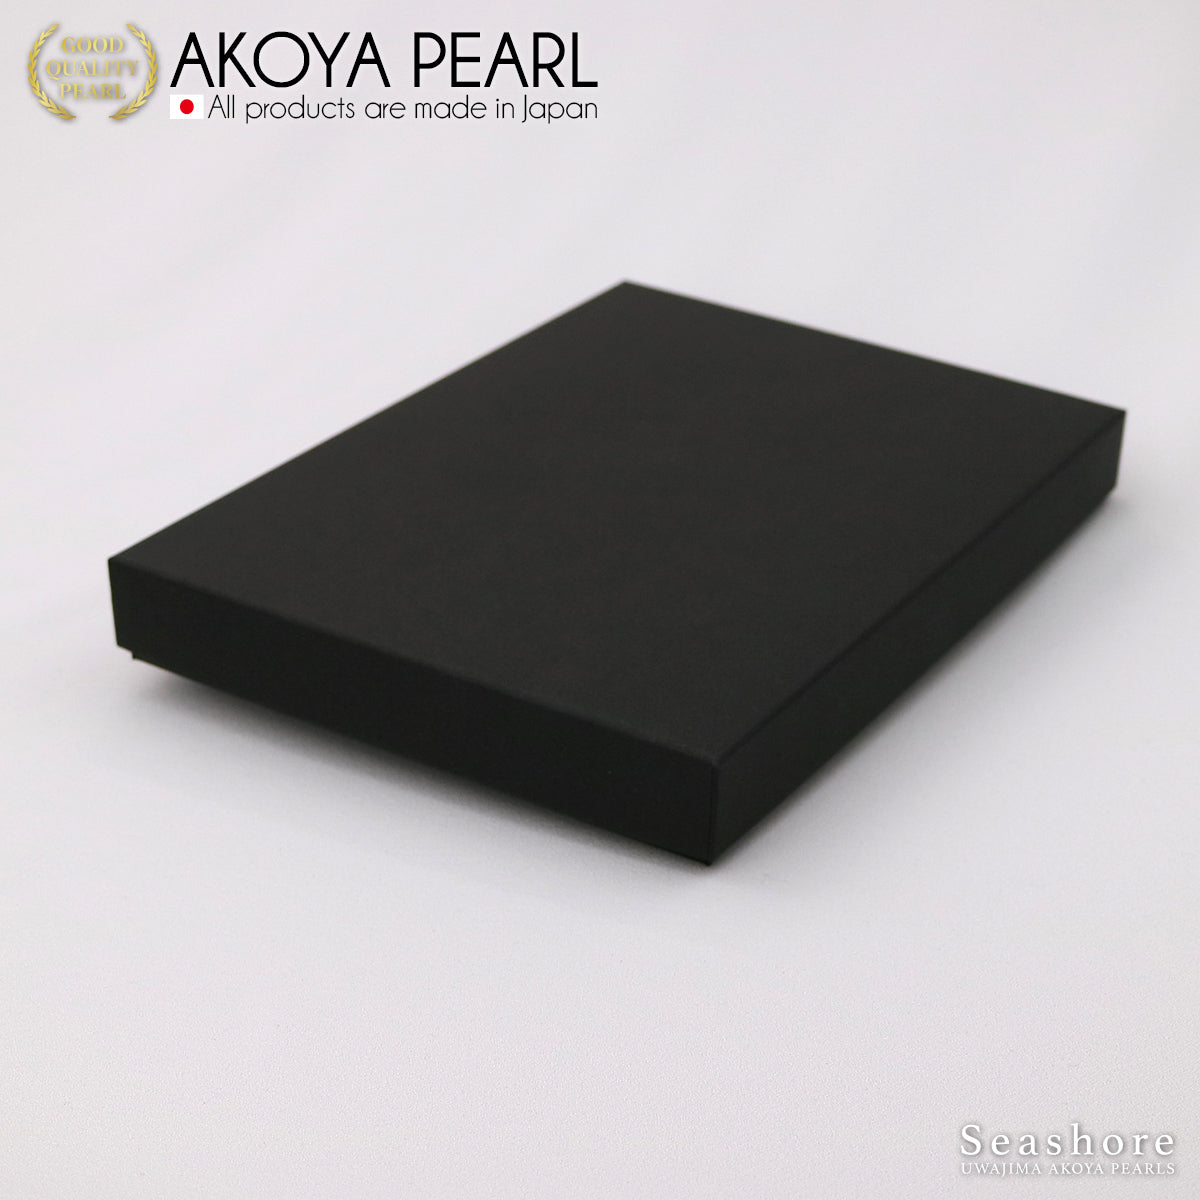 オメガ紙製ケース ネックレスケース ブラック/ライトグレー(1.0.745.850)